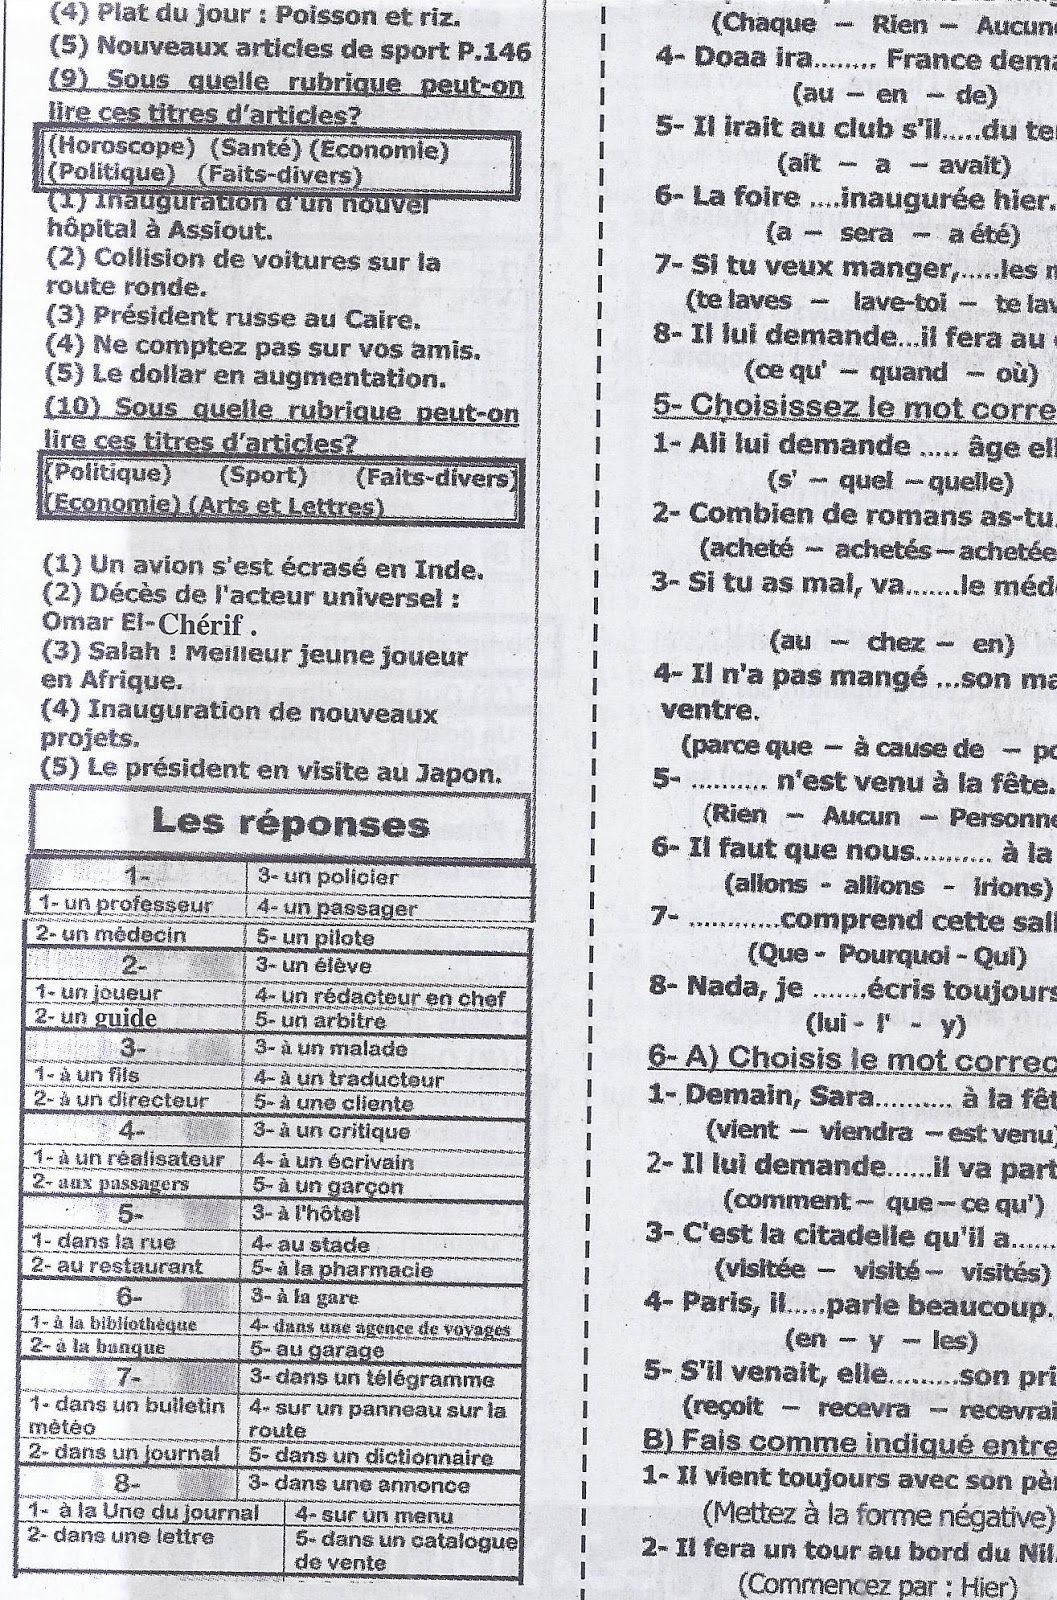 أهم أسئلة اللغة الفرنسية المتوقعة لامتحان الثانوية العامة 2016 بالاجابات  9